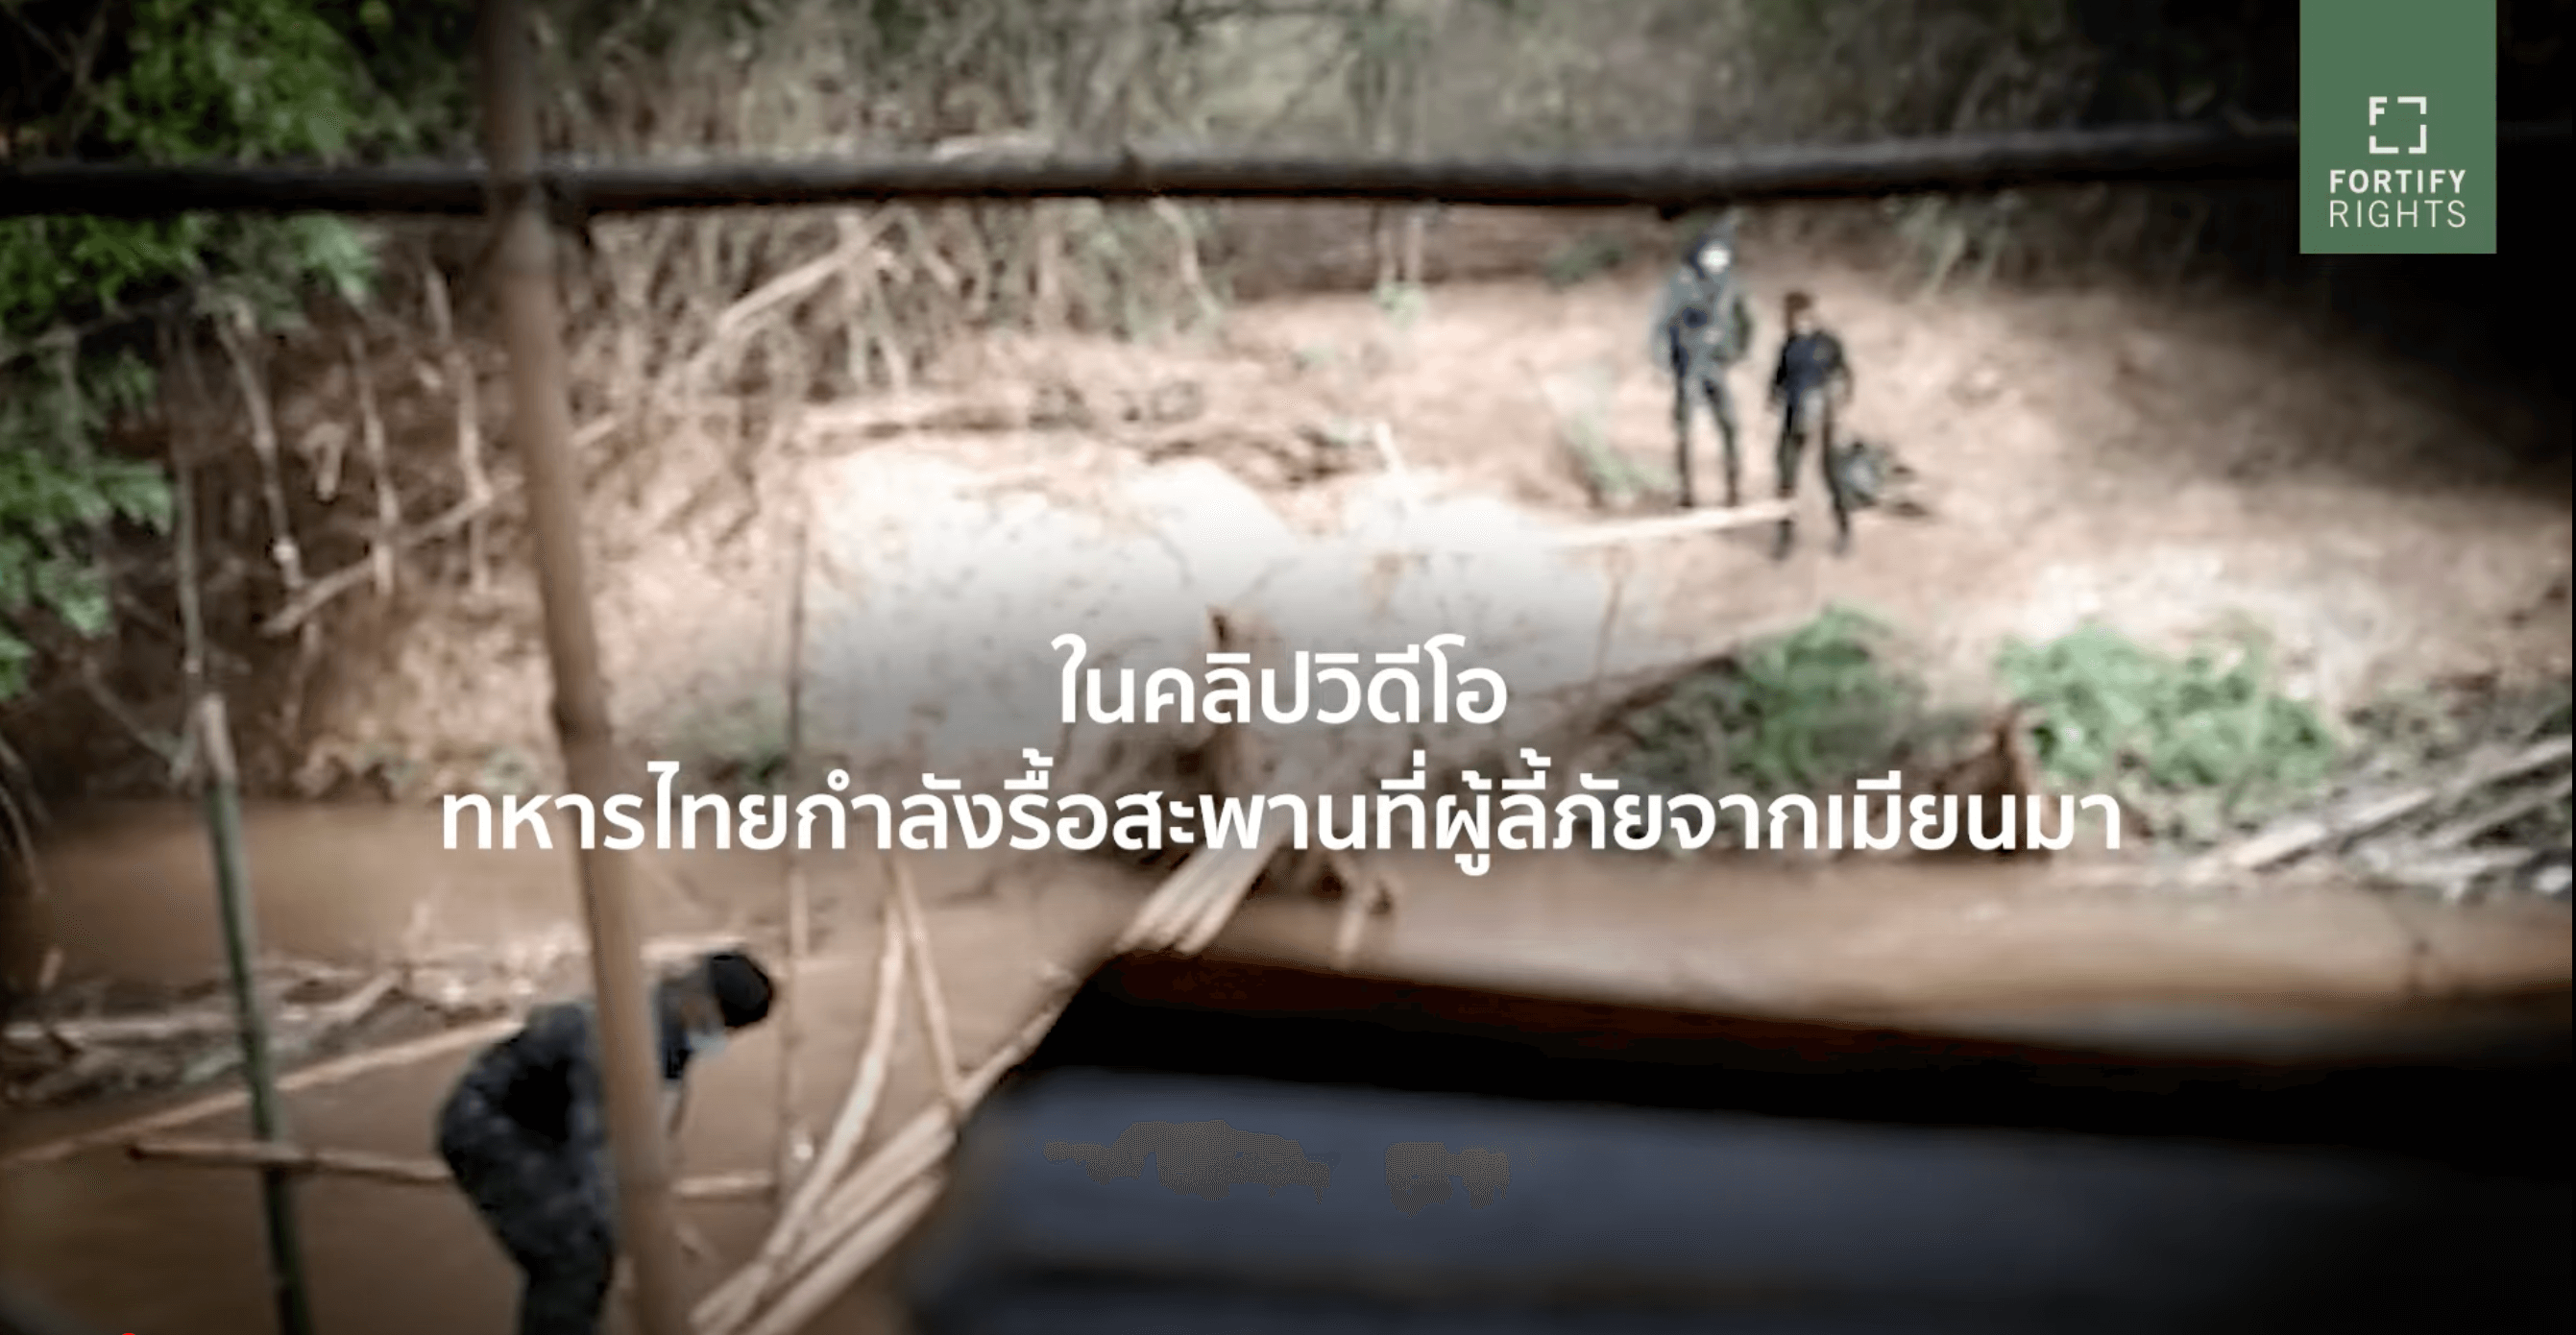 ทหารไทยกำลังทำลายสะพานข้ามพรมแดนของผู้ลี้ภัยชาวเมียนมา